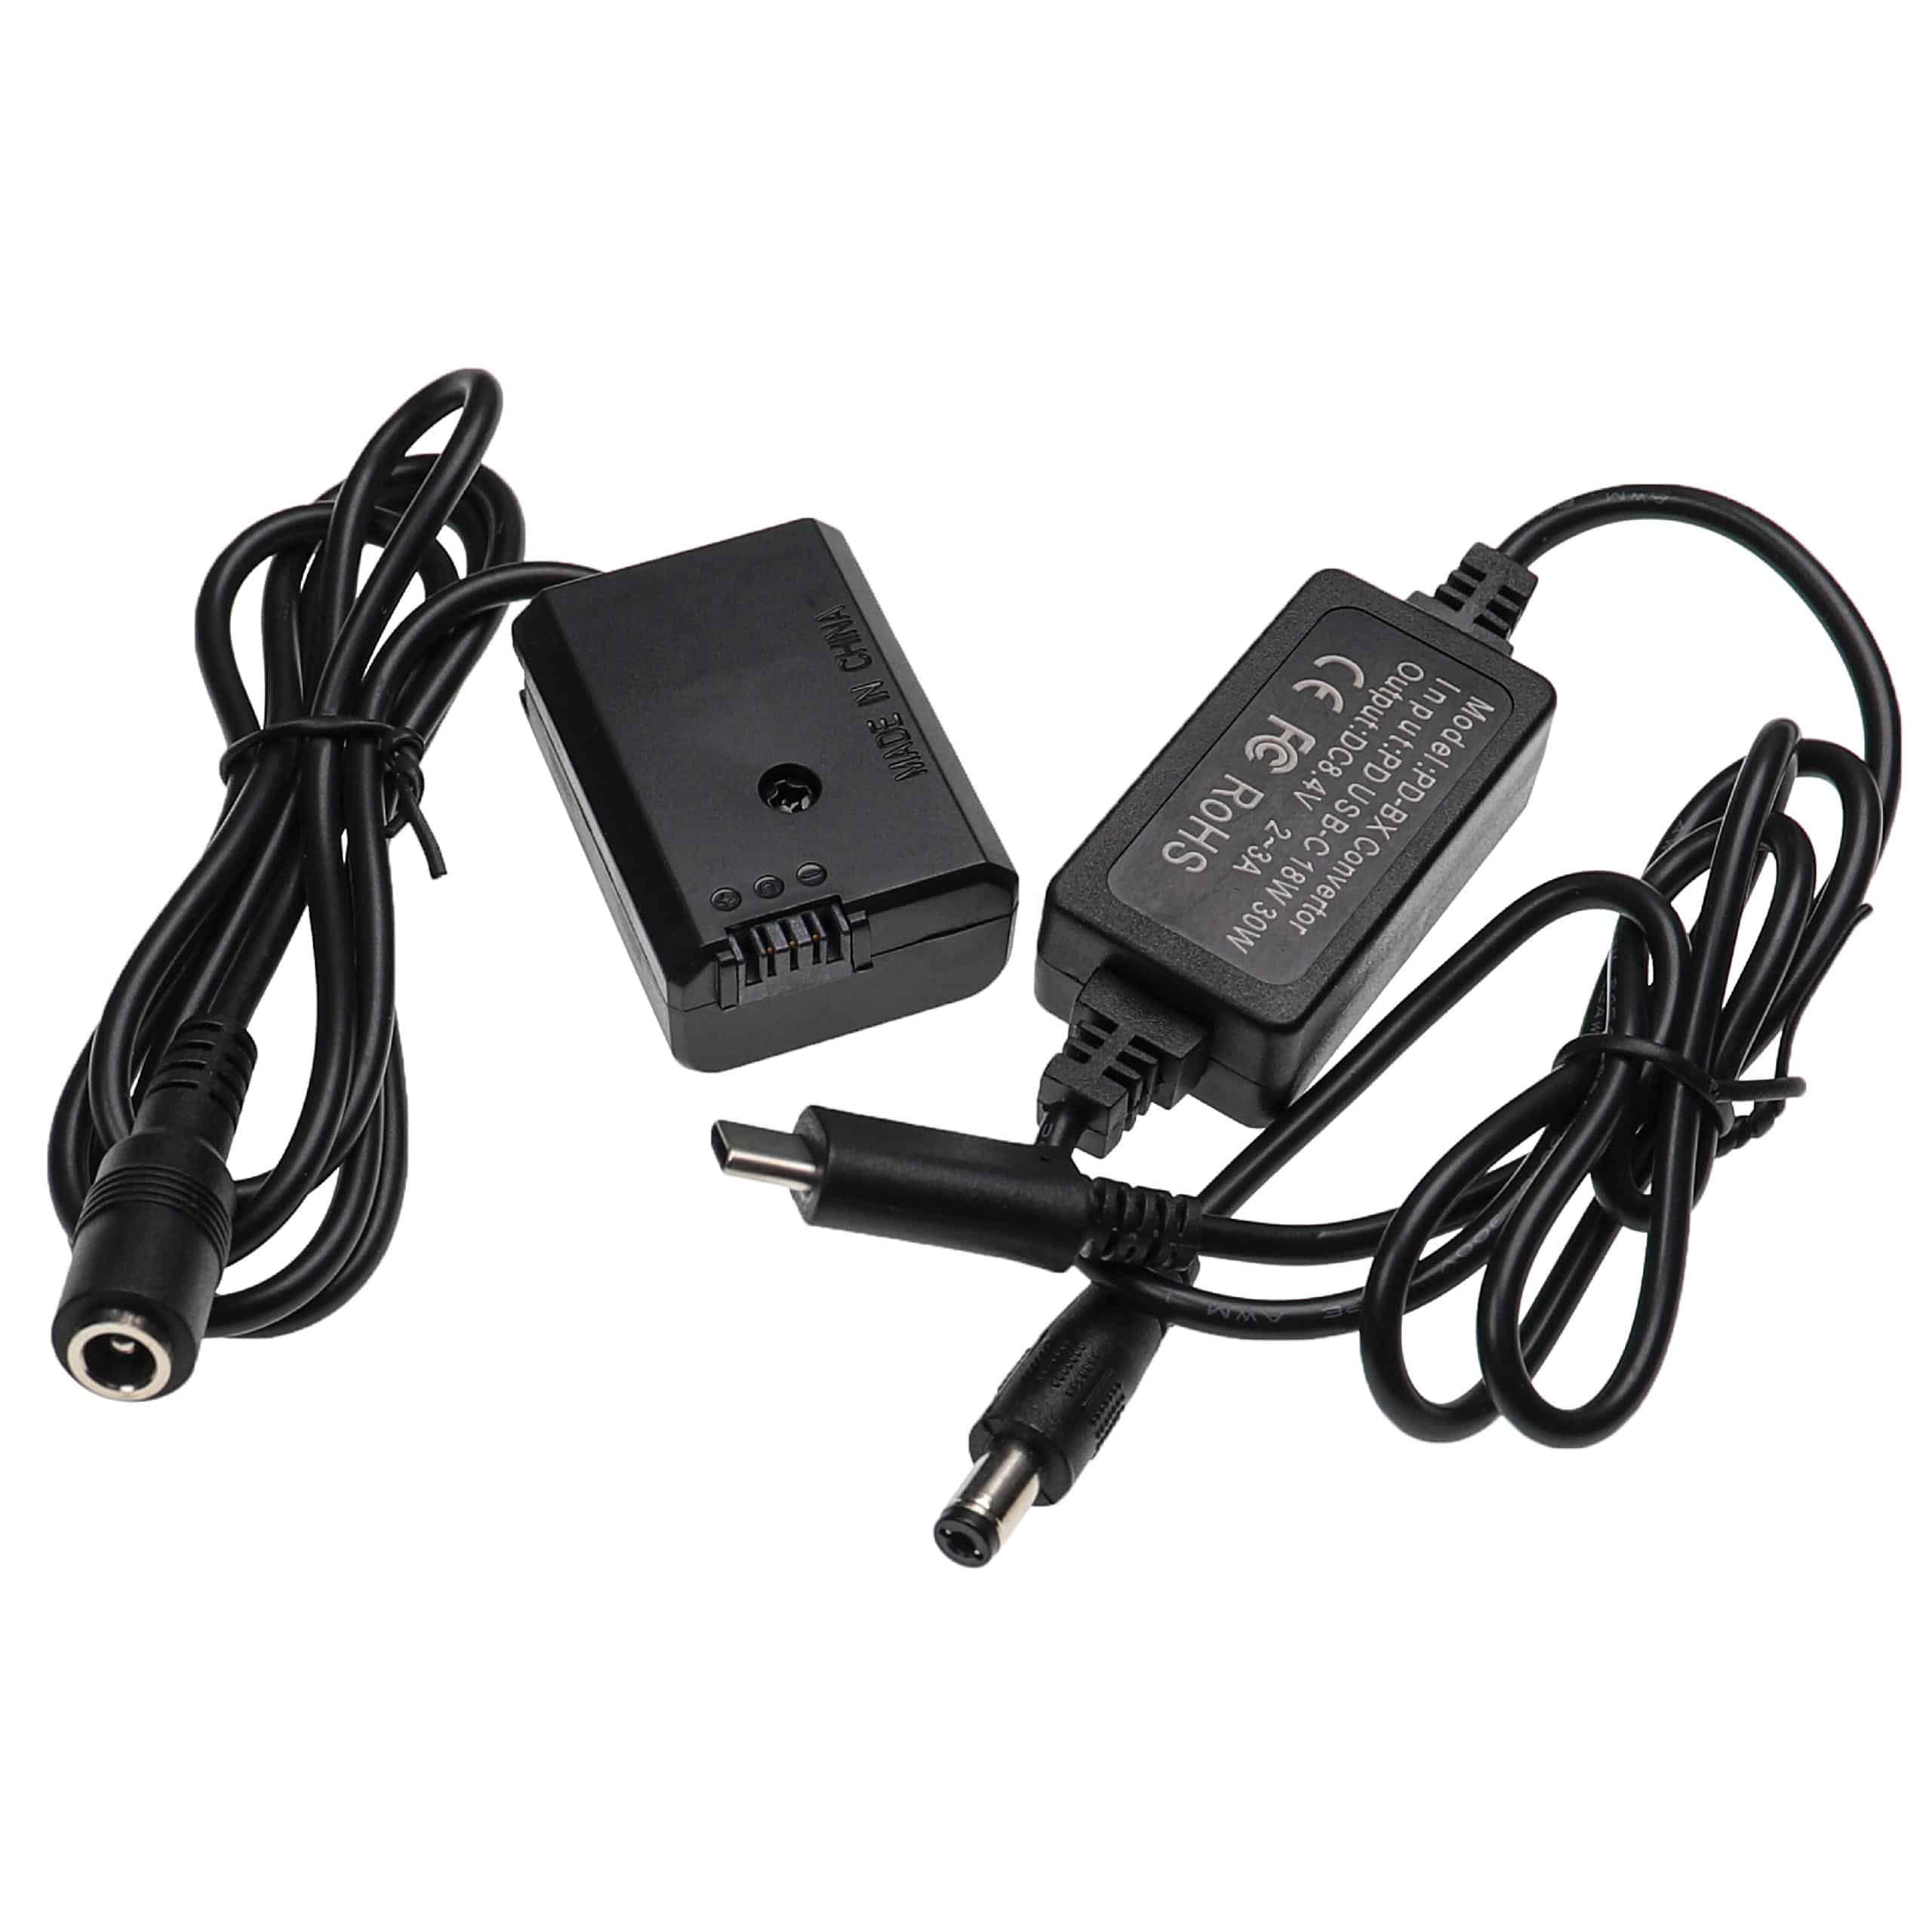 Bloc secteur USB remplace Sony AC-PW20 pour caméra Sony + coupleur DC comme Sony NP-FW50